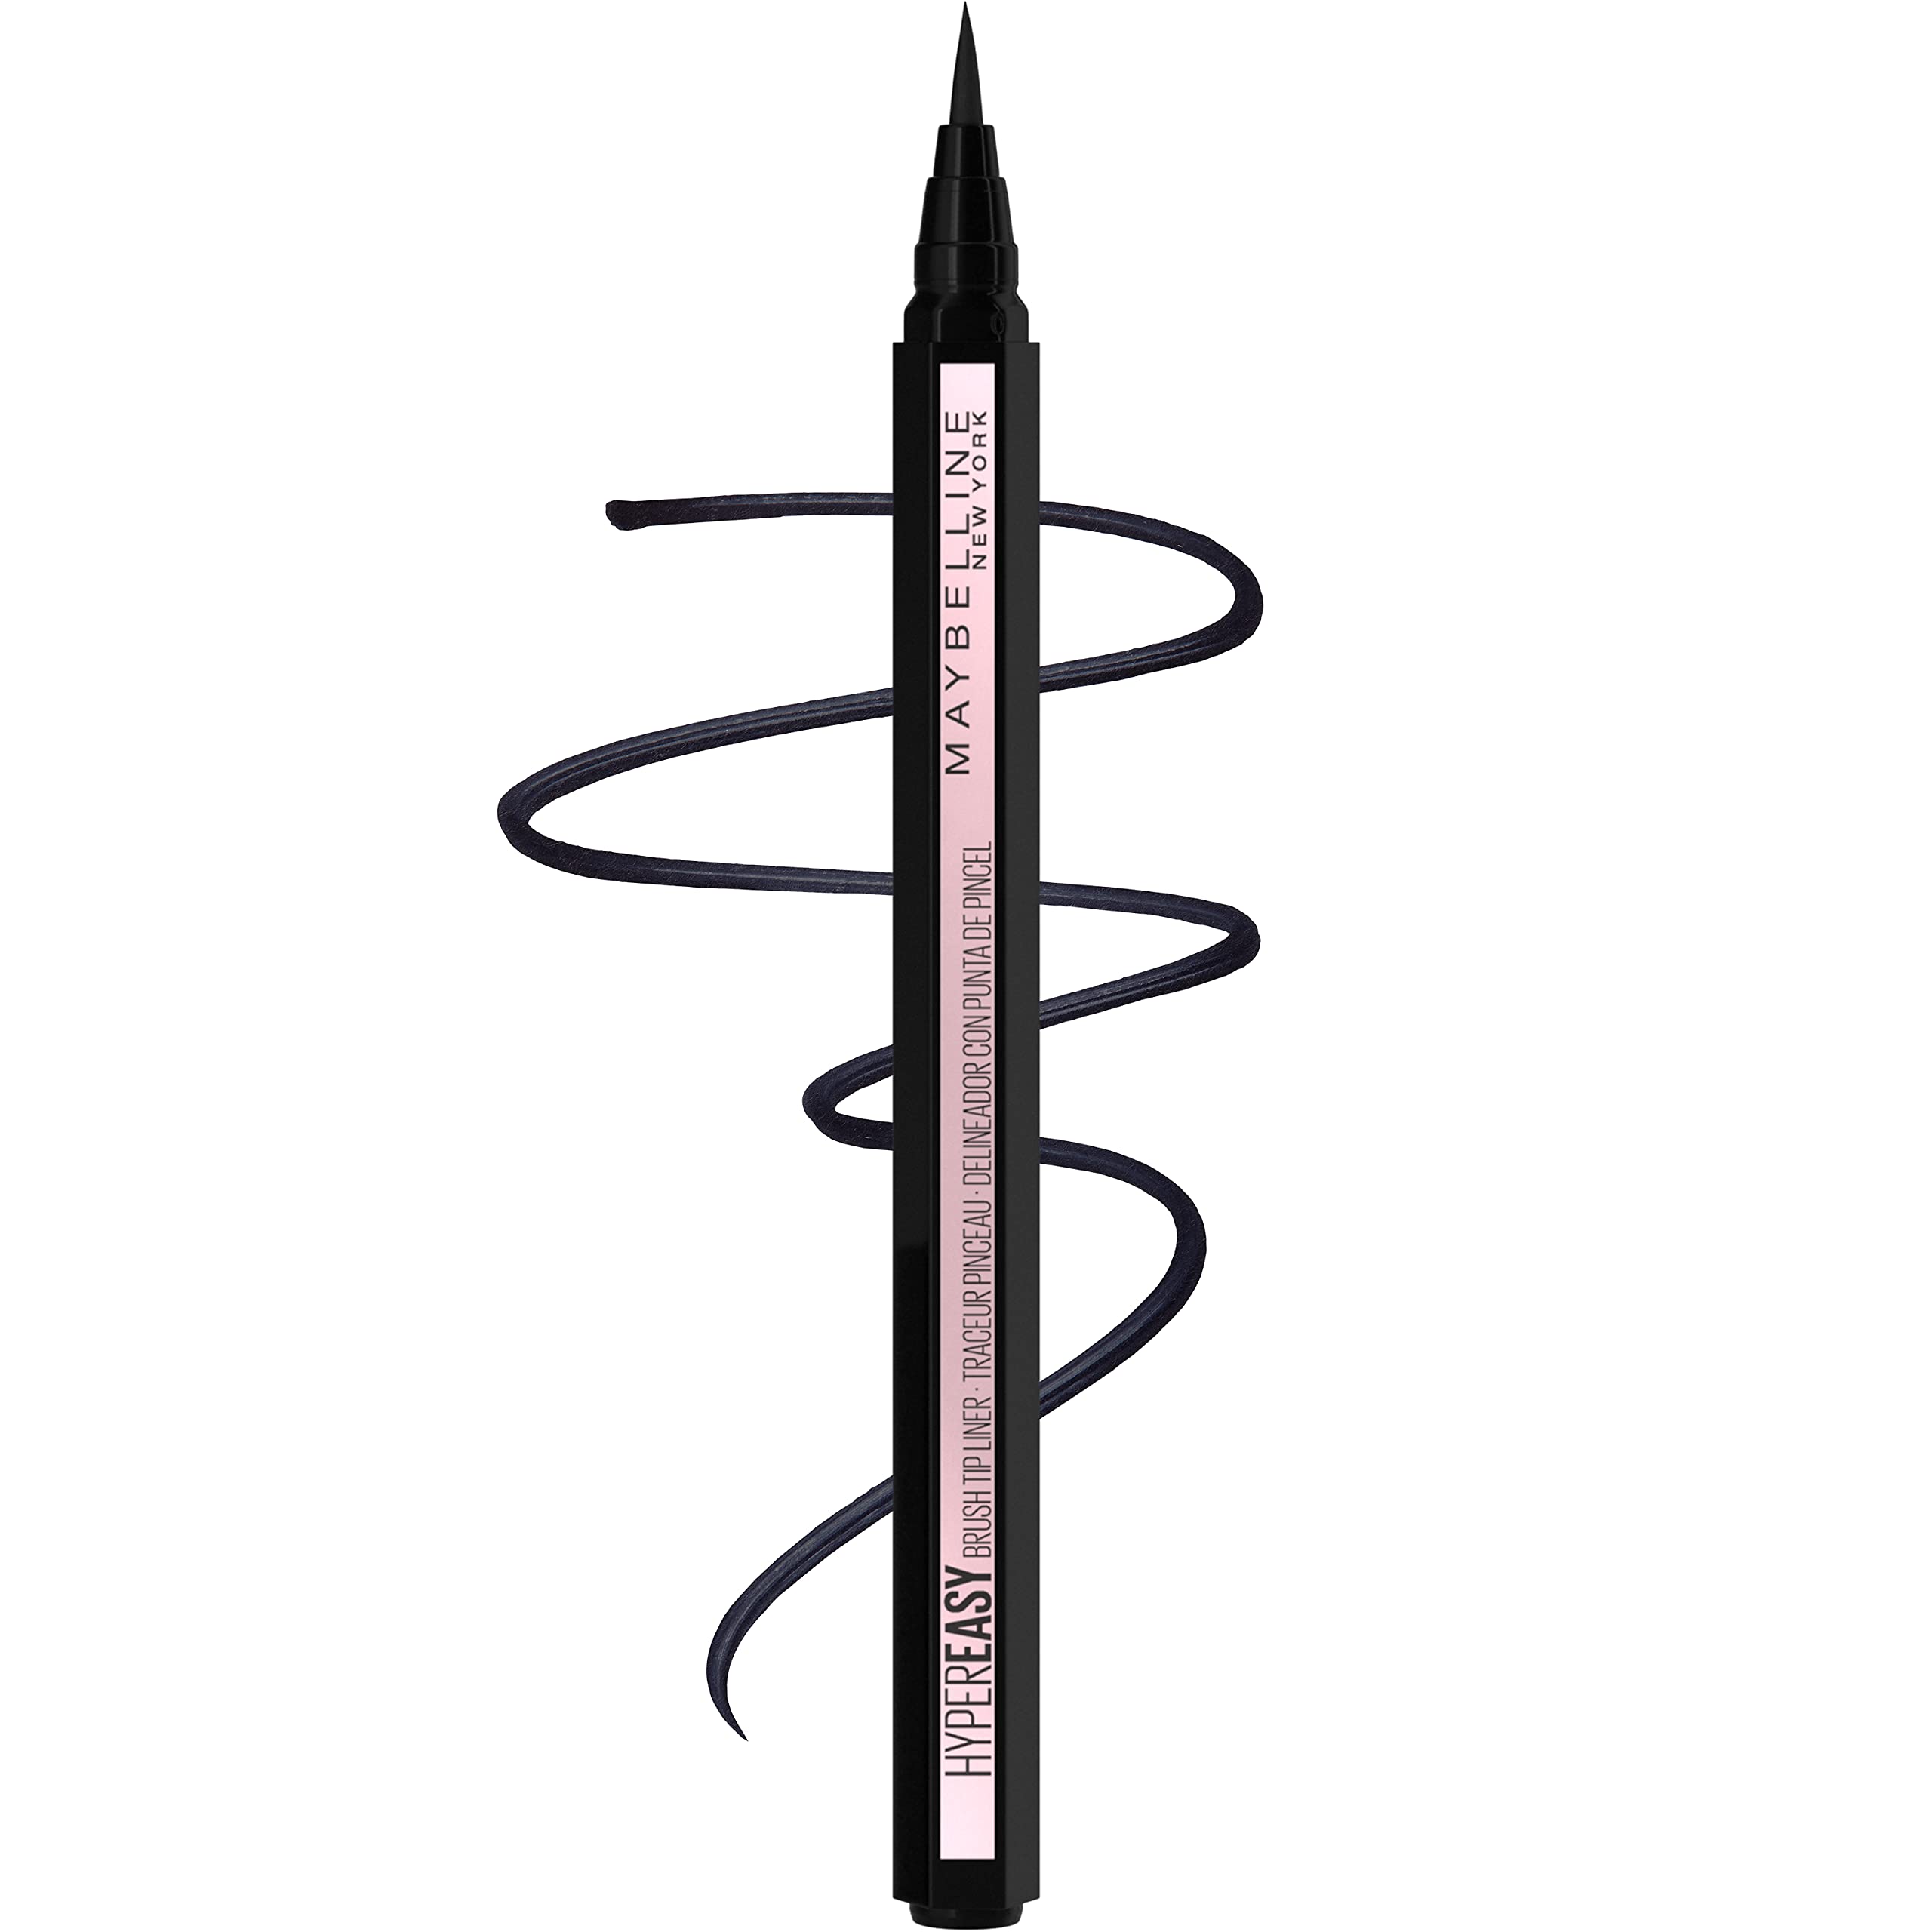 MAYBELLINE Hyper Easy Liquid Pen No-Skip Eyeliner, Satin Finish, Waterproof Formula, Eye Liner Makeup, Pitch Black, 0.018 Fl Oz